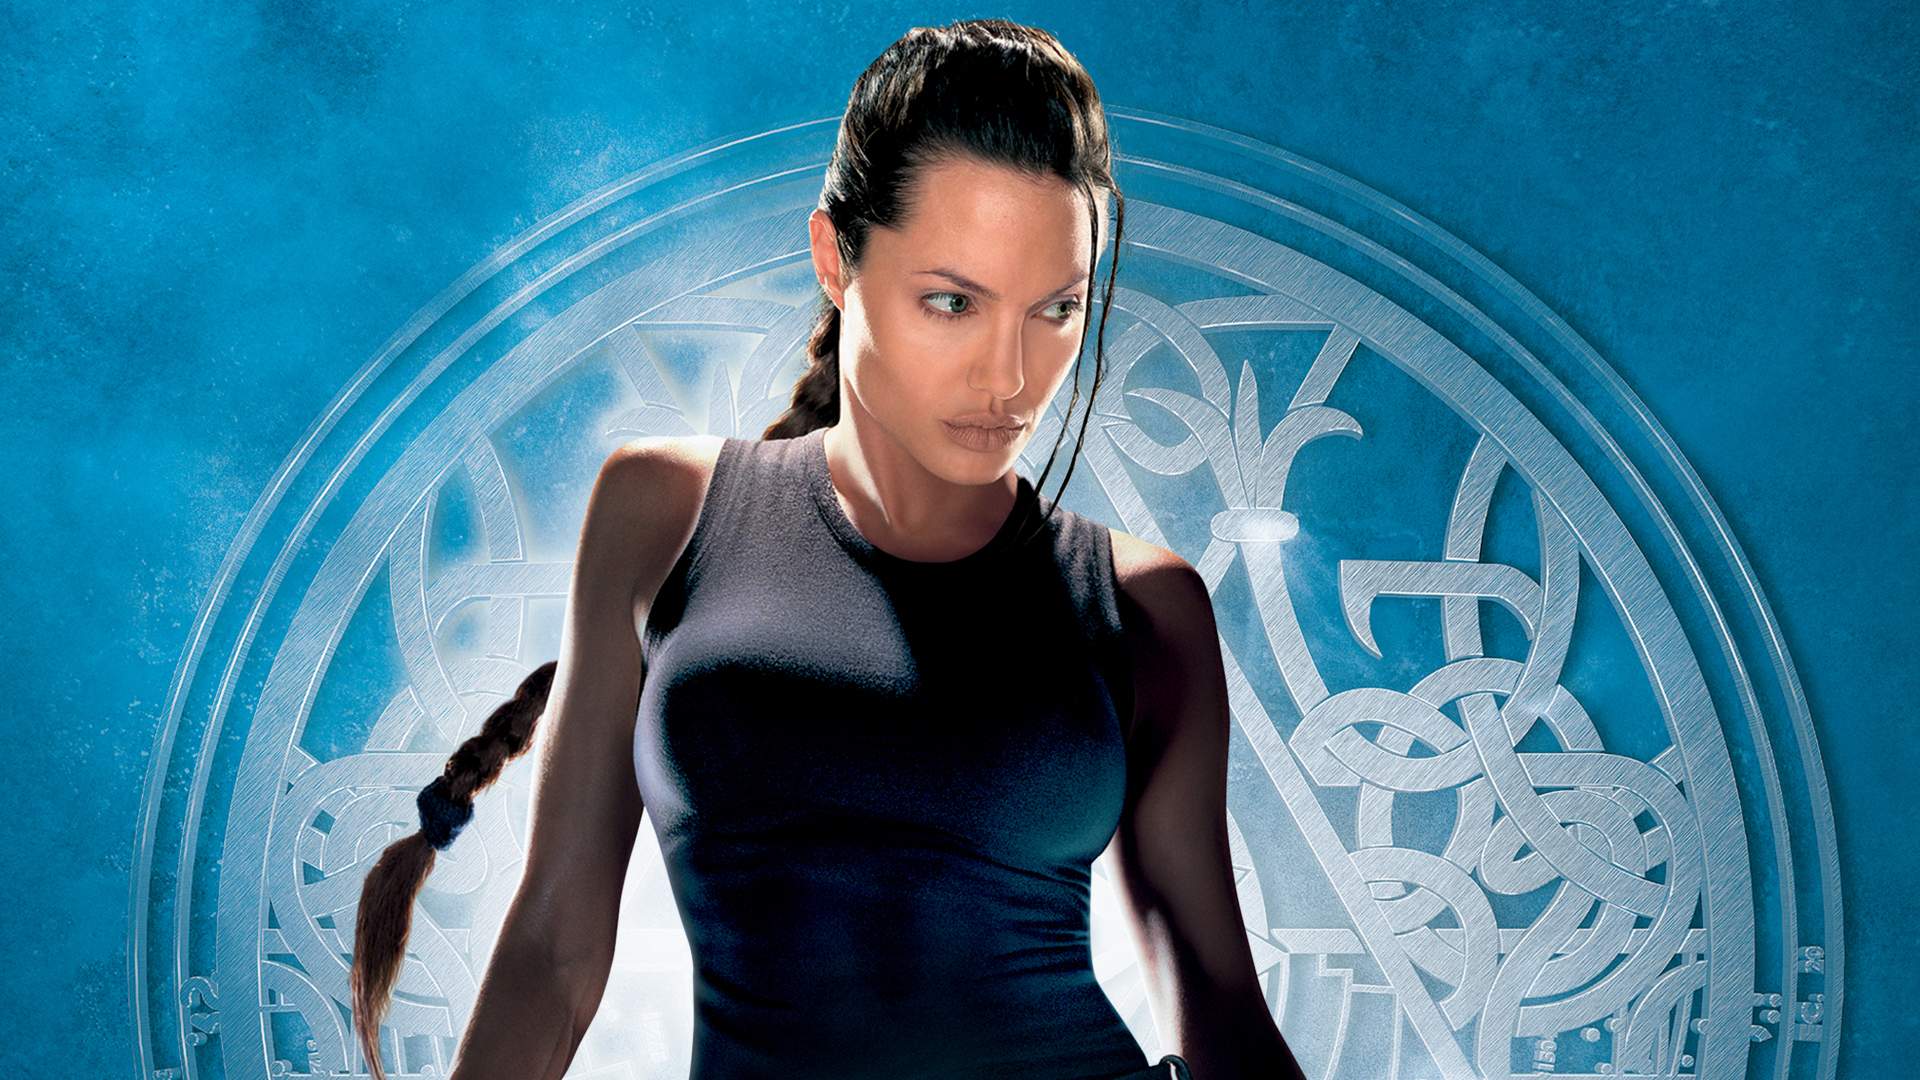 Dvd - Tomb Raider: A Origem na Americanas Empresas